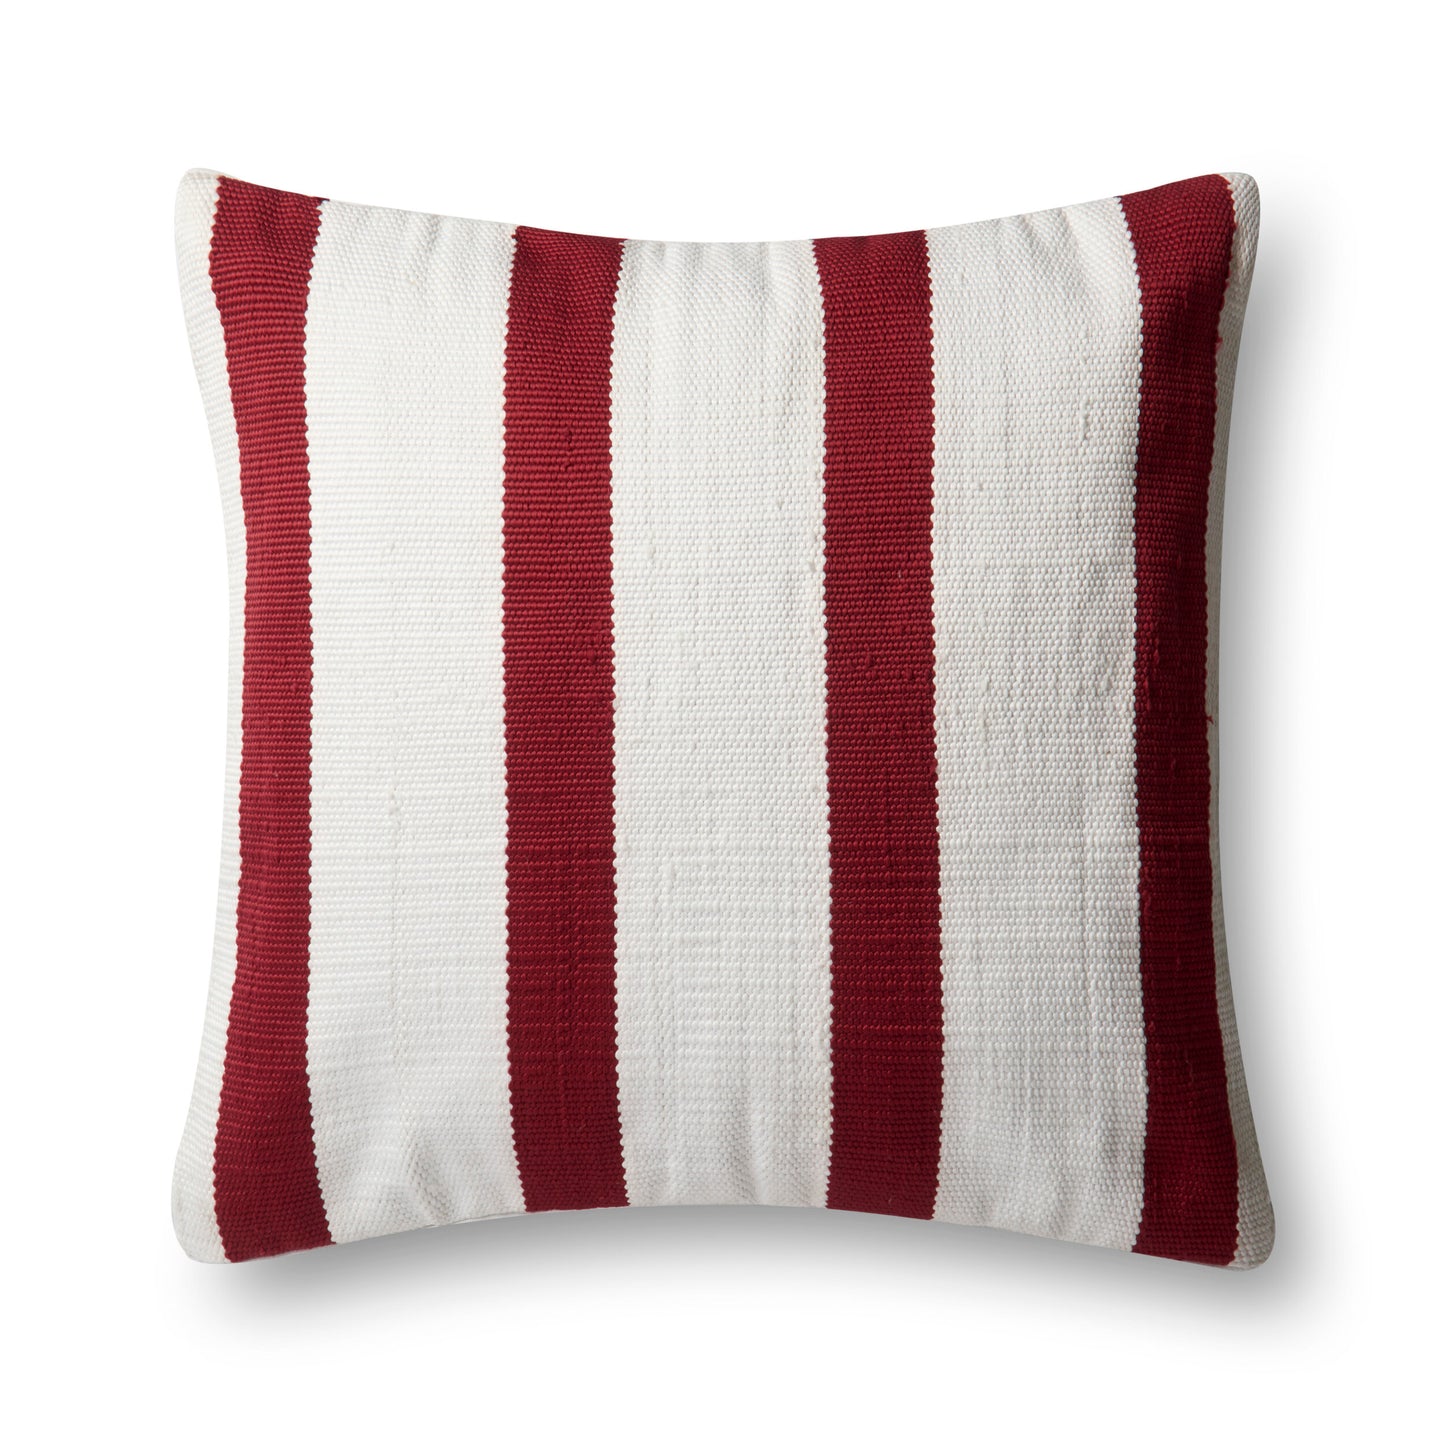 Americana Outdoor Pillow